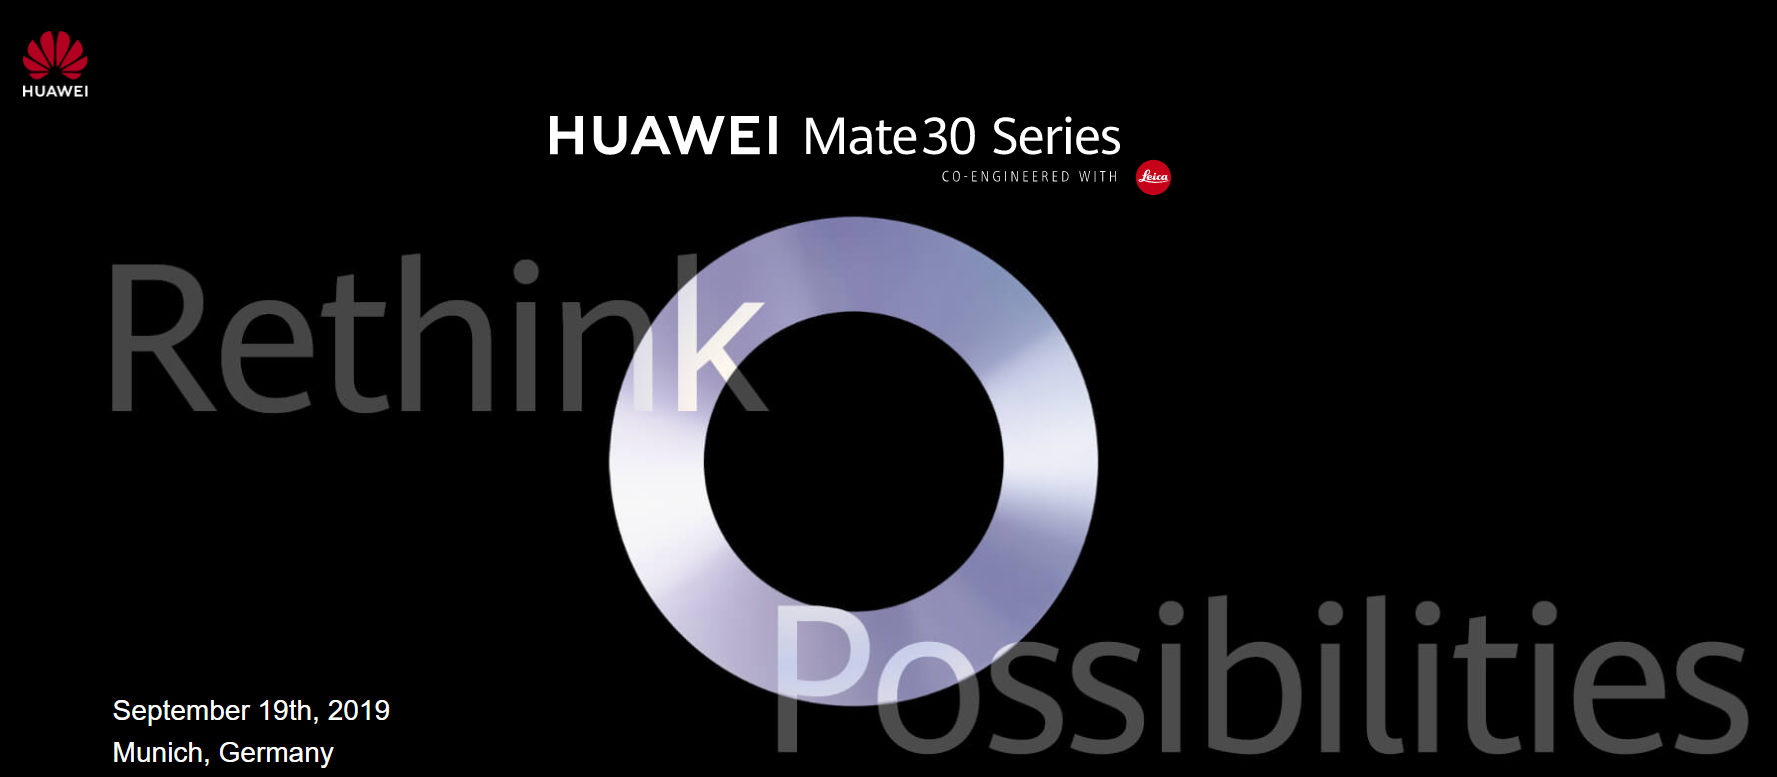 【快訊報報】華為 HUAWEI Mate30 系列新機 將在 9/19 德國慕尼黑發表 - 華為手機 - 科技狗 3C DOG